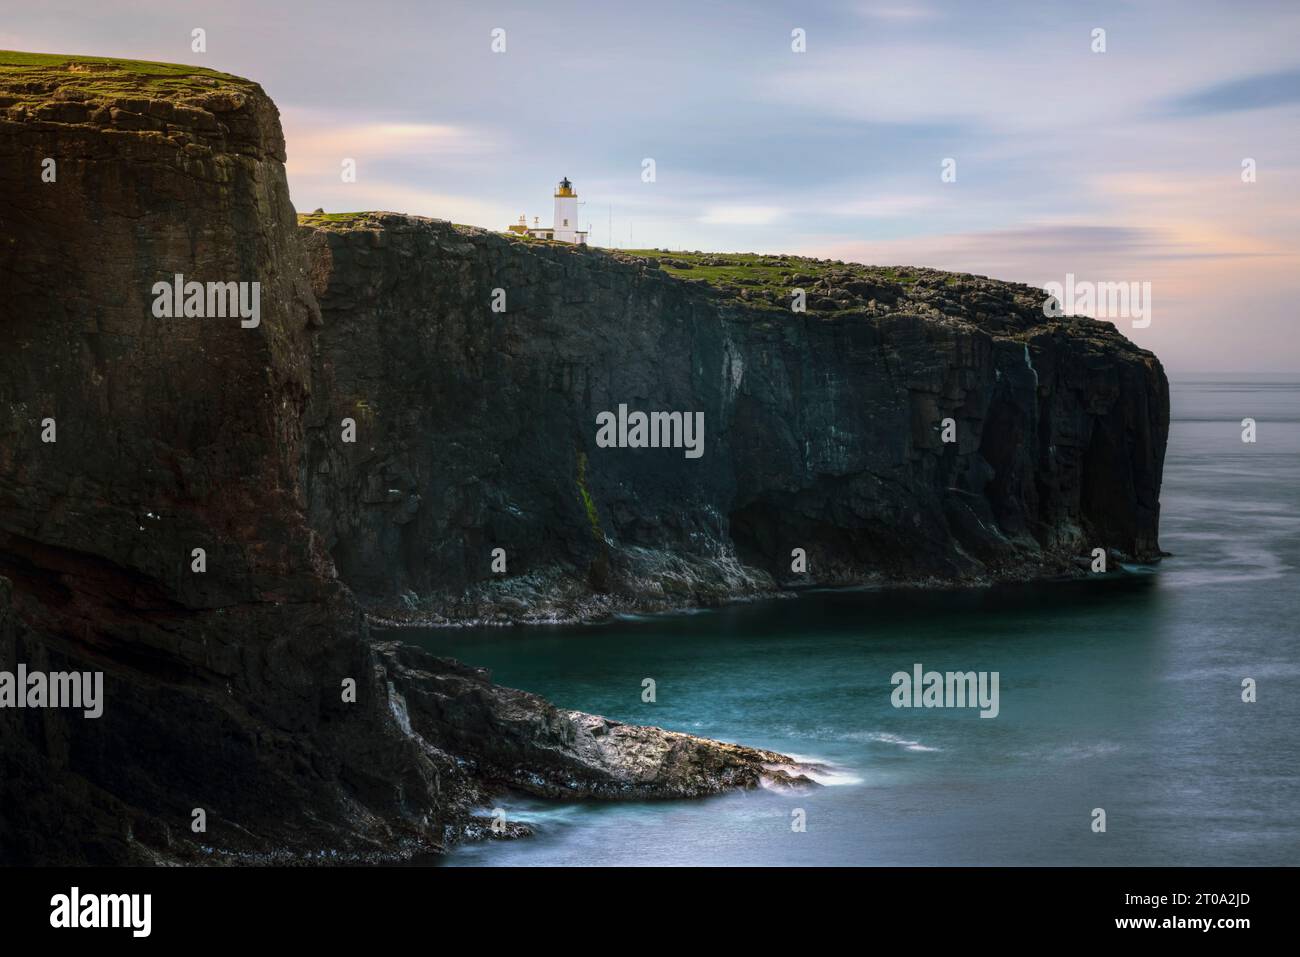 Formazioni rocciose vulcaniche e scogliere a Eshaness, Isole Shetland. Foto Stock